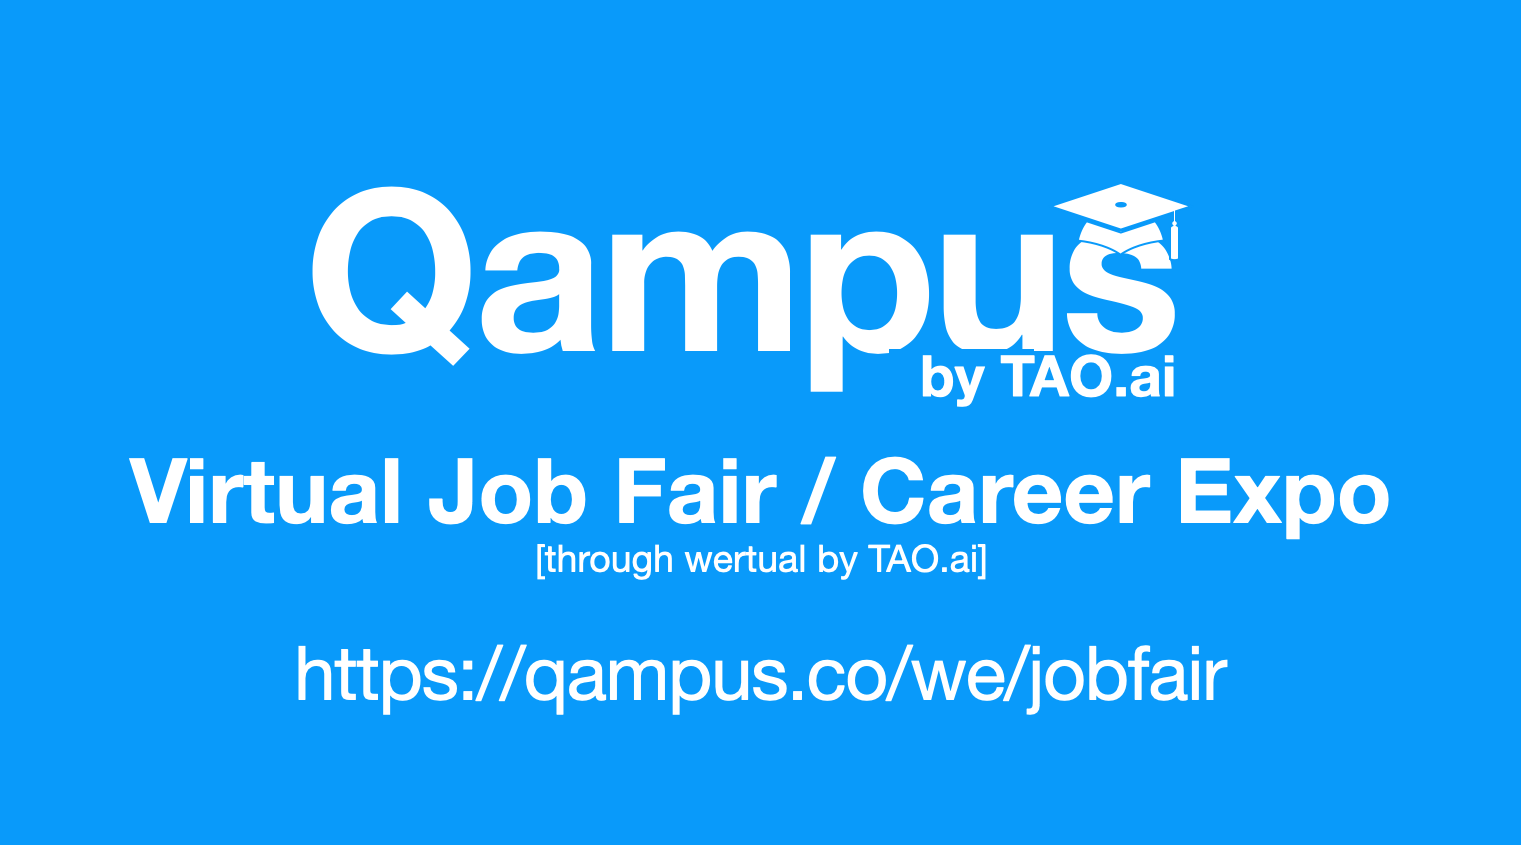 #Qampus Virtual Job Fair / Career Expo #College #University Event #SFO